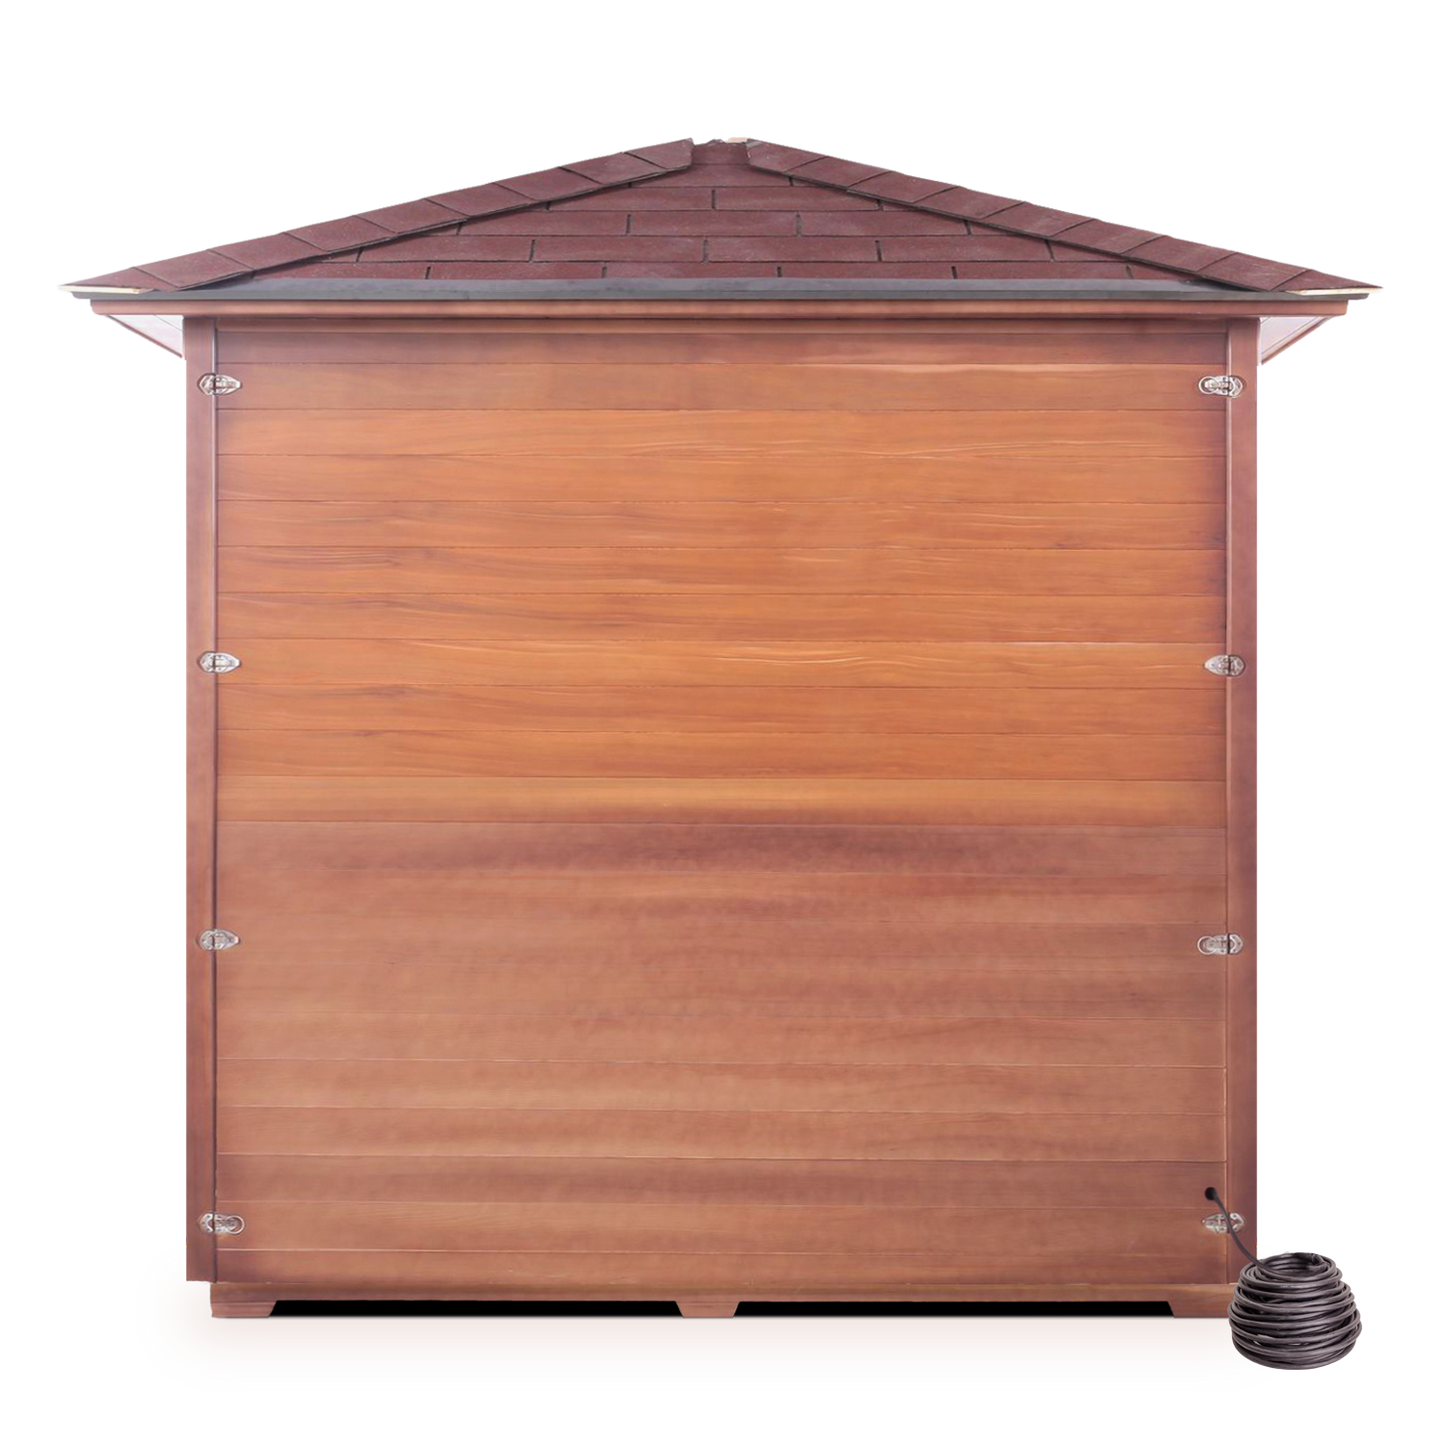 Sierra5 Outdoor Infrared Sauna